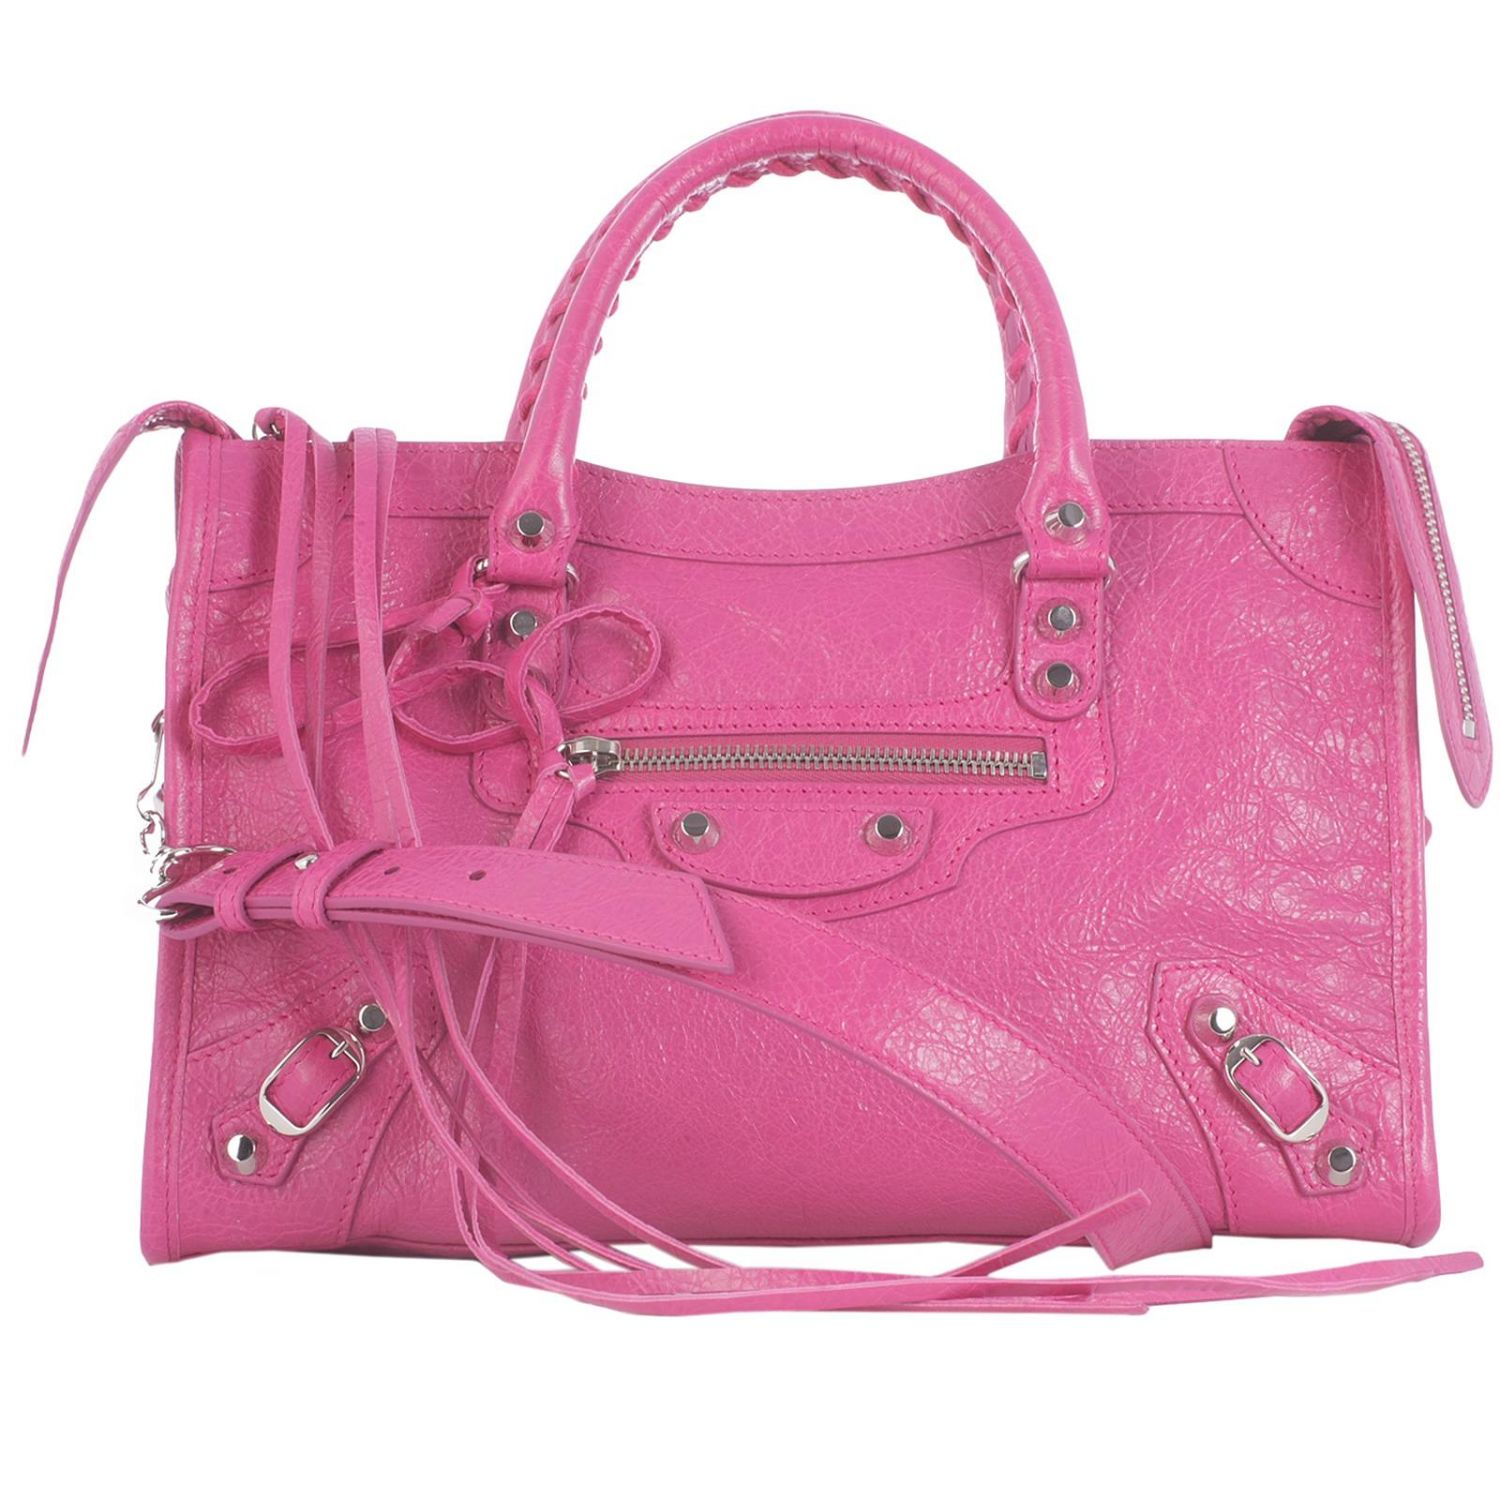 Balenciaga Outlet: Shoulder bag women - Pink | Handbag Balenciaga ...